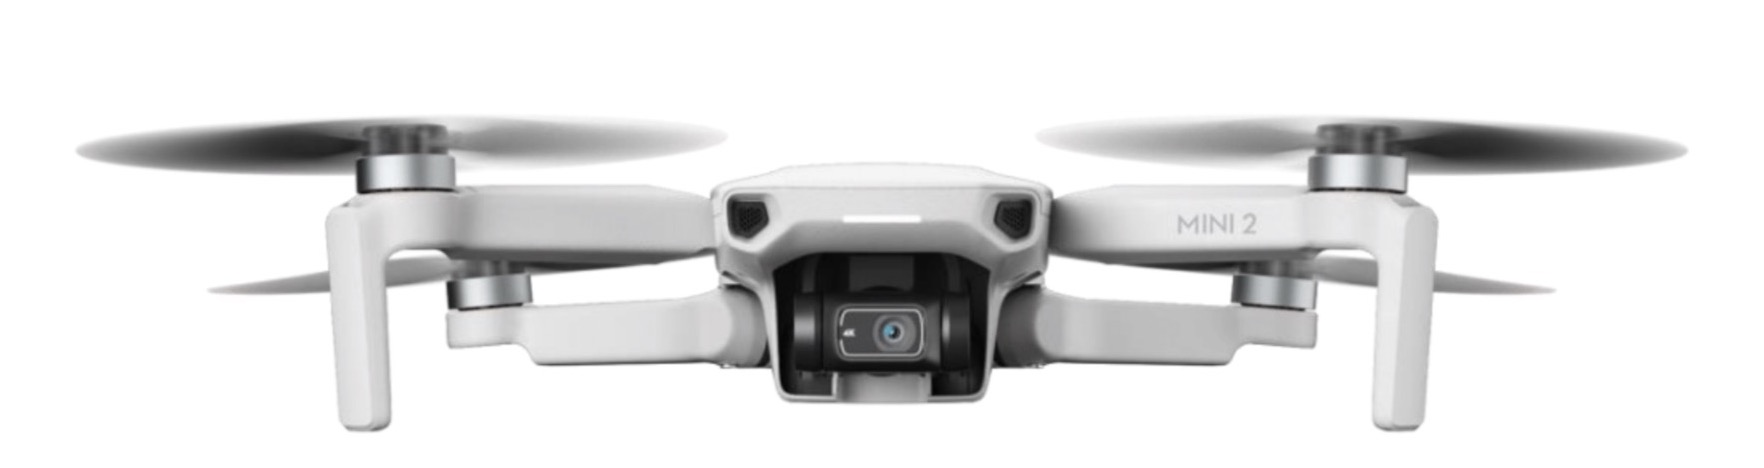 DJI Mini 2, il drone ultraleggero sotti i 250 g ora ha 4K e trasmissione Ocusync